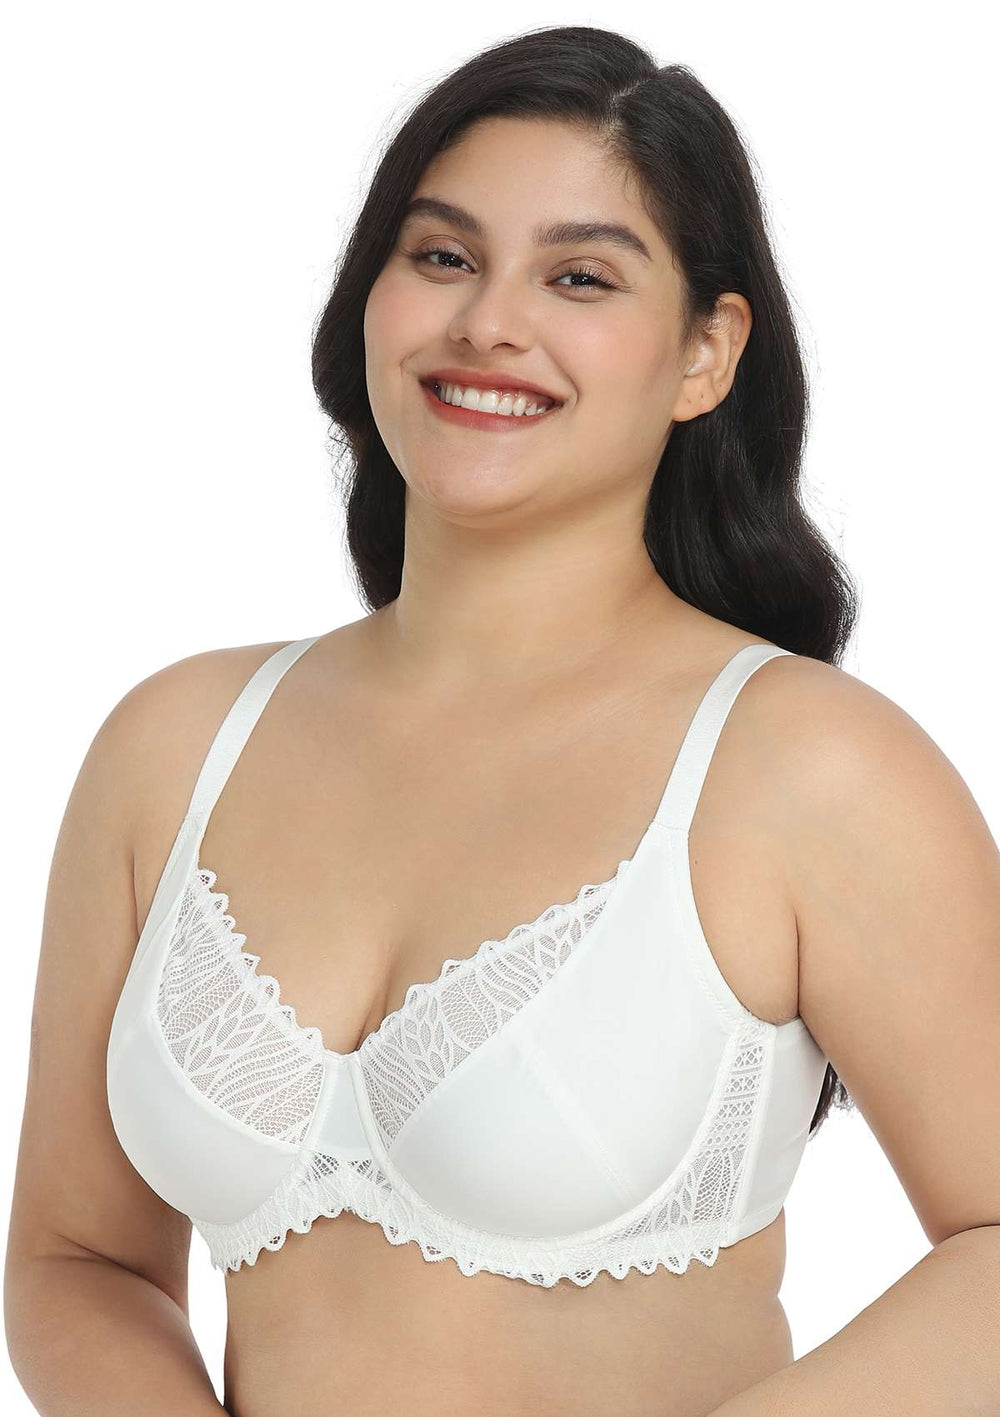 Floret white full coverage bra